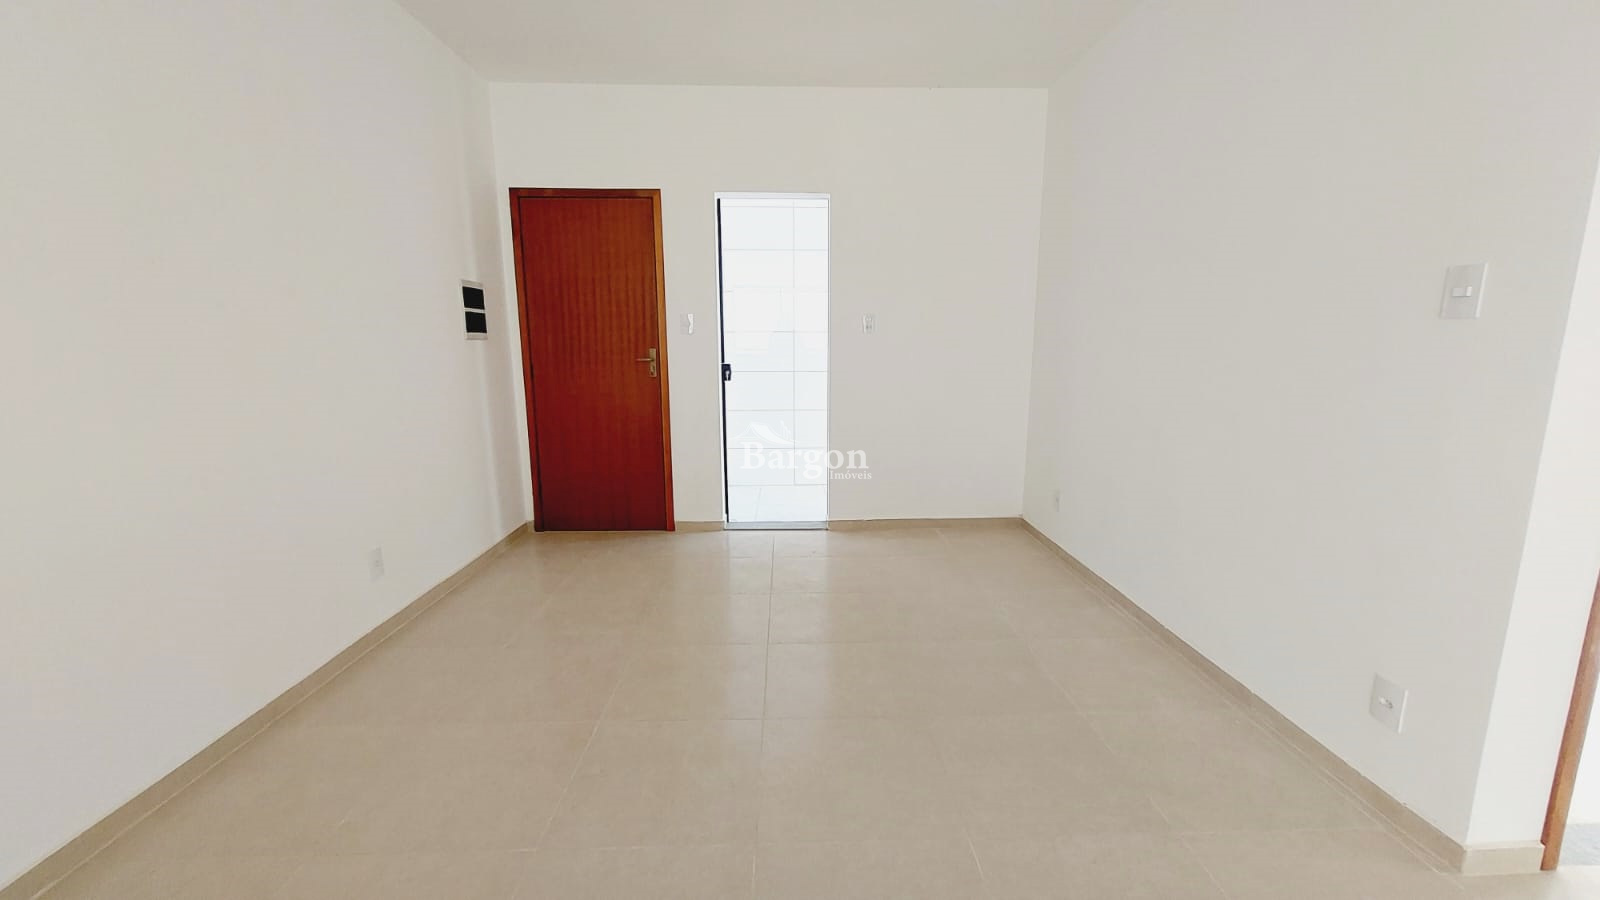 Apartamento à venda em Residencial Jardim São João, Juiz de Fora - MG - Foto 2